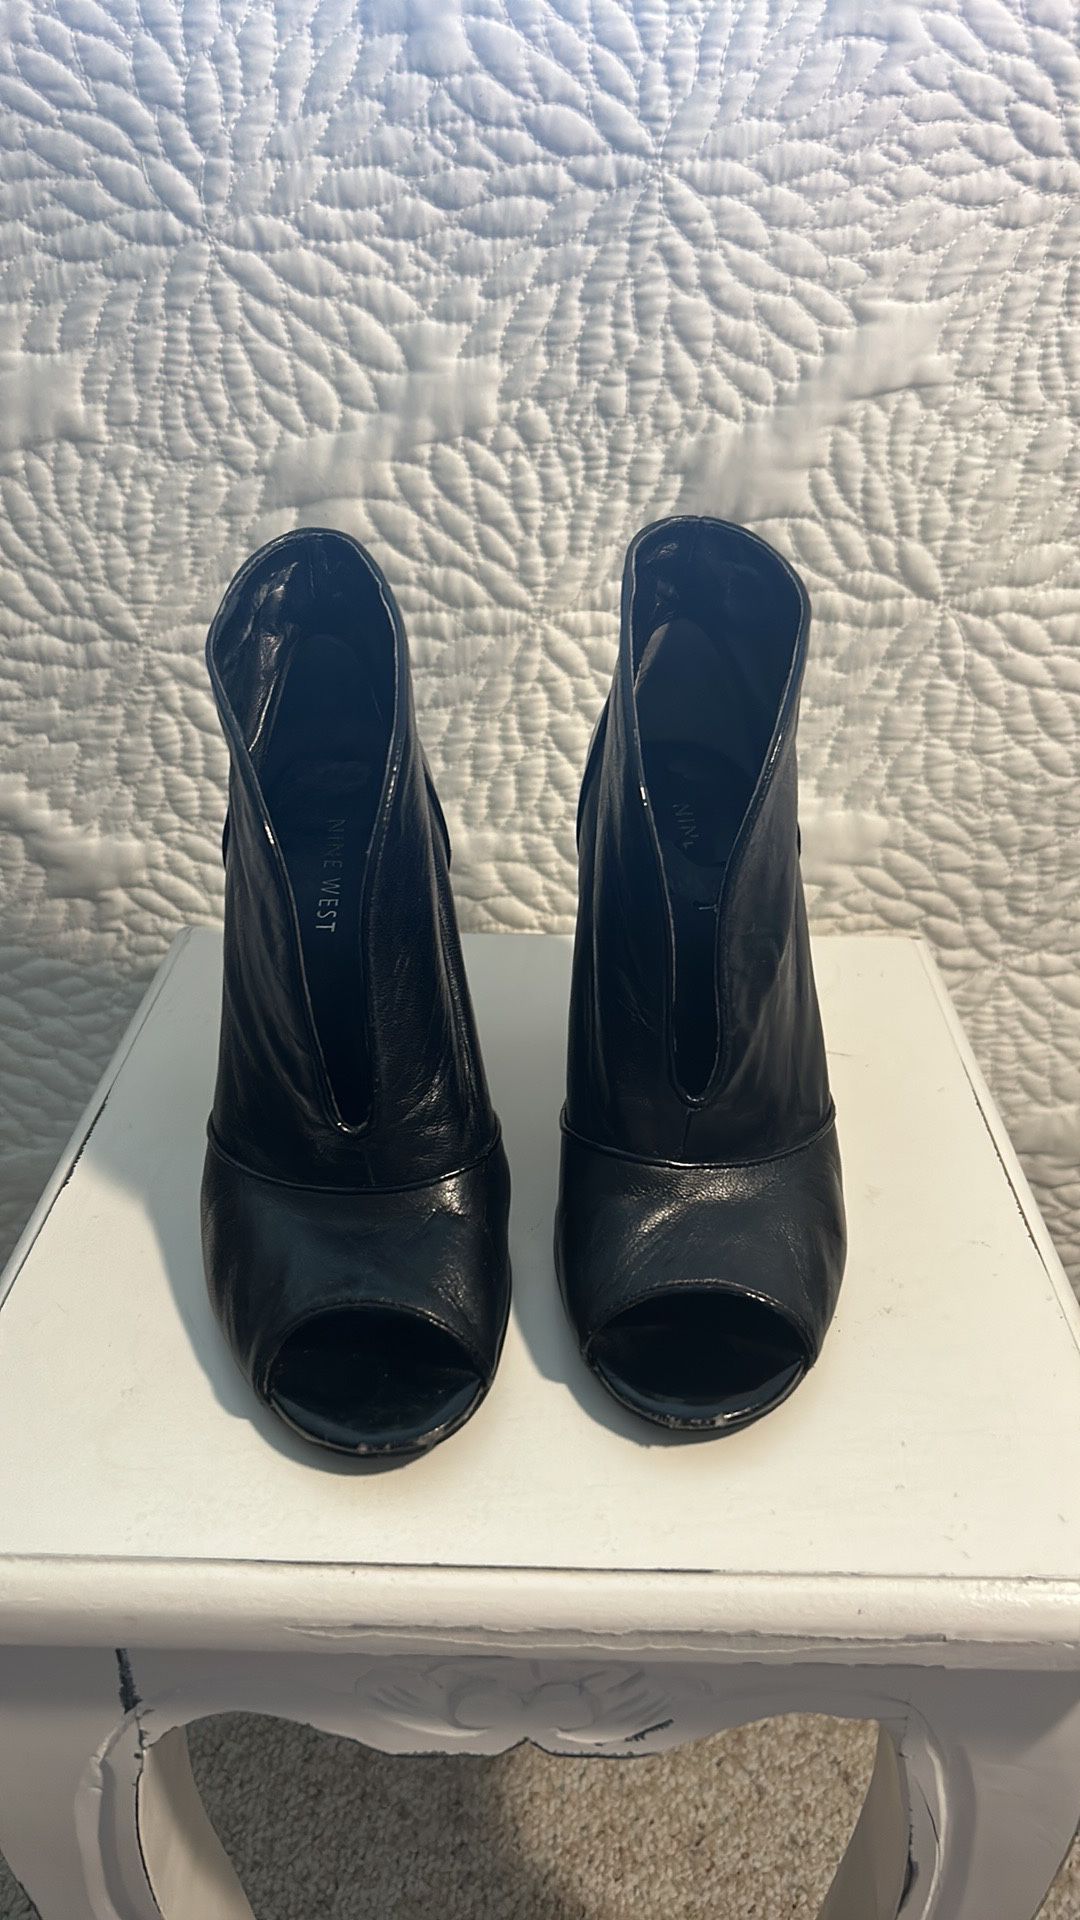 Nine West leather heels Women’s shoe